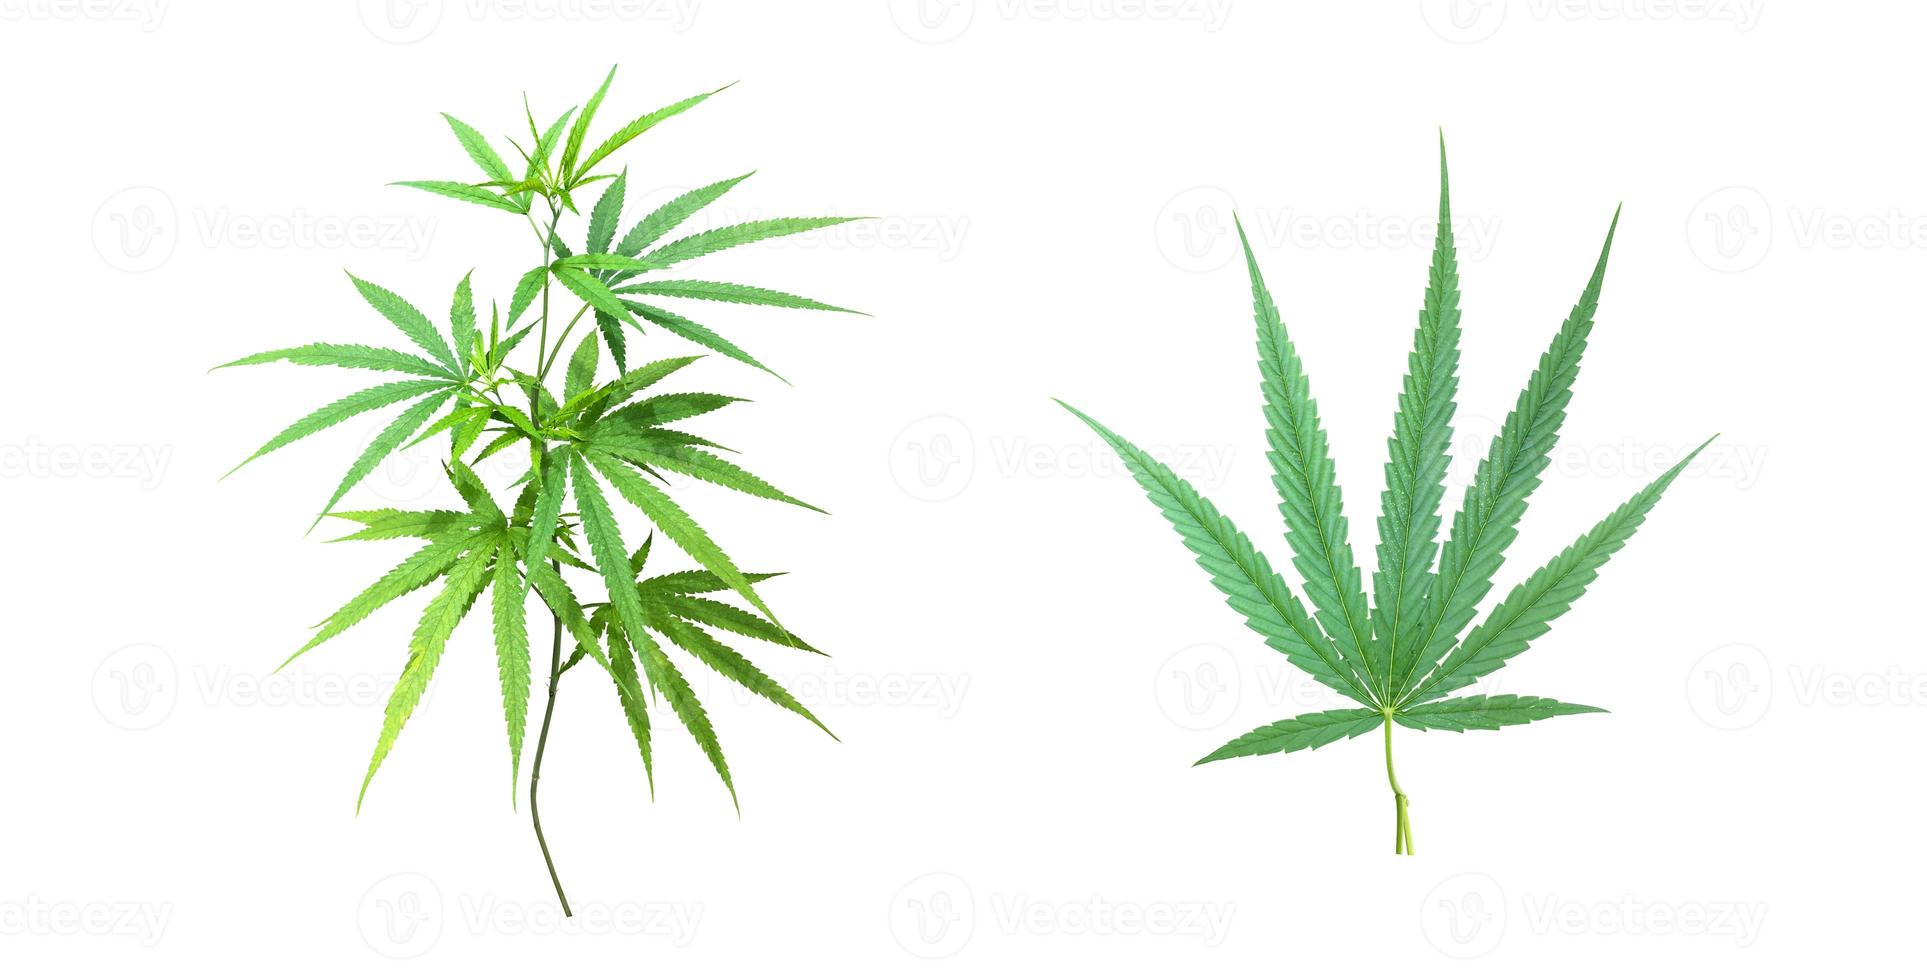 plante de cannabis indica isolée avec chemins de détourage. photo